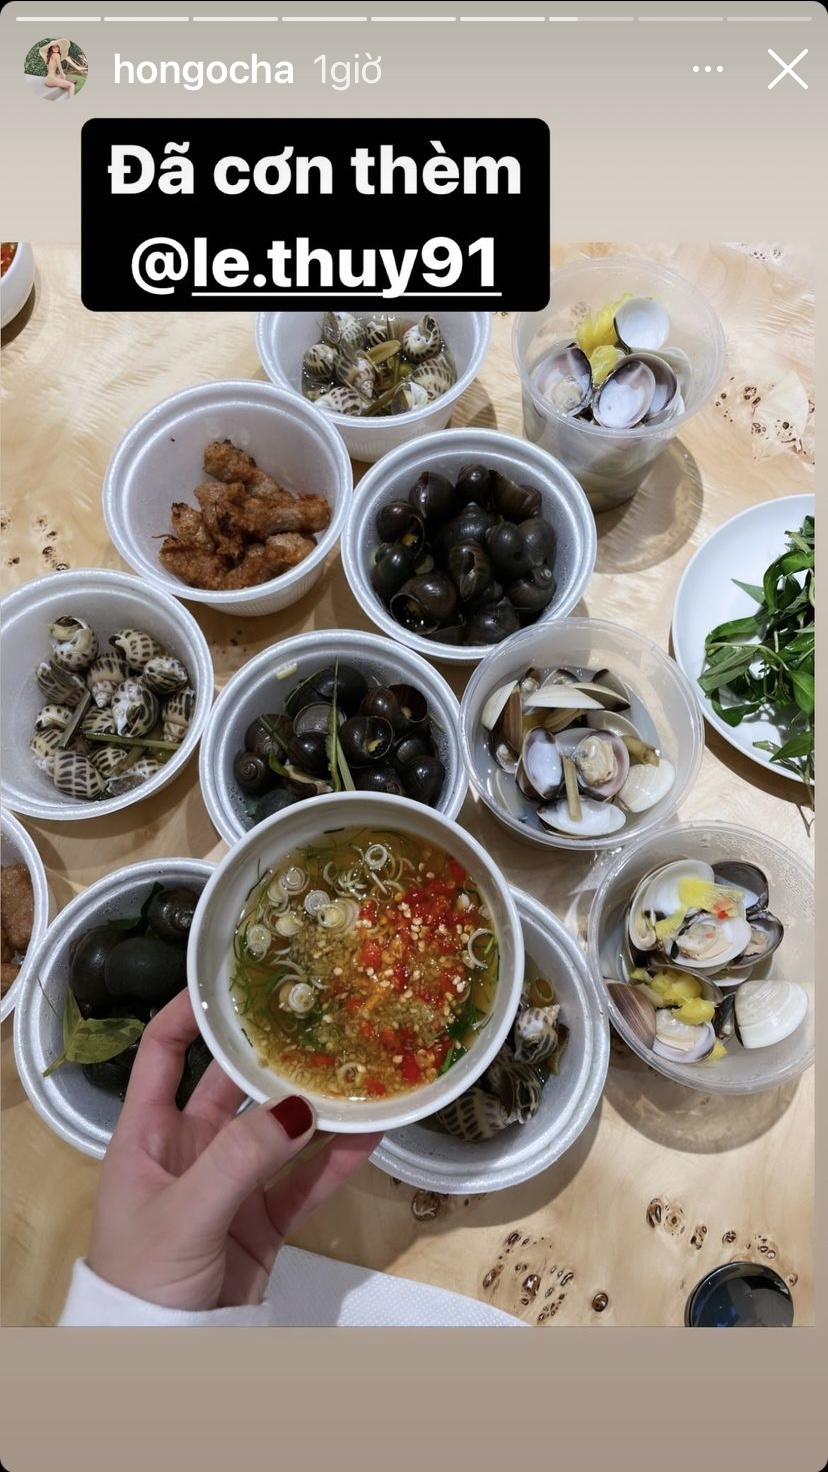 Ngoài món ăn do con trai tự làm, Hồ Ngọc Hà còn khoe các món ốc, hải sản ngon ứa nước miếng.